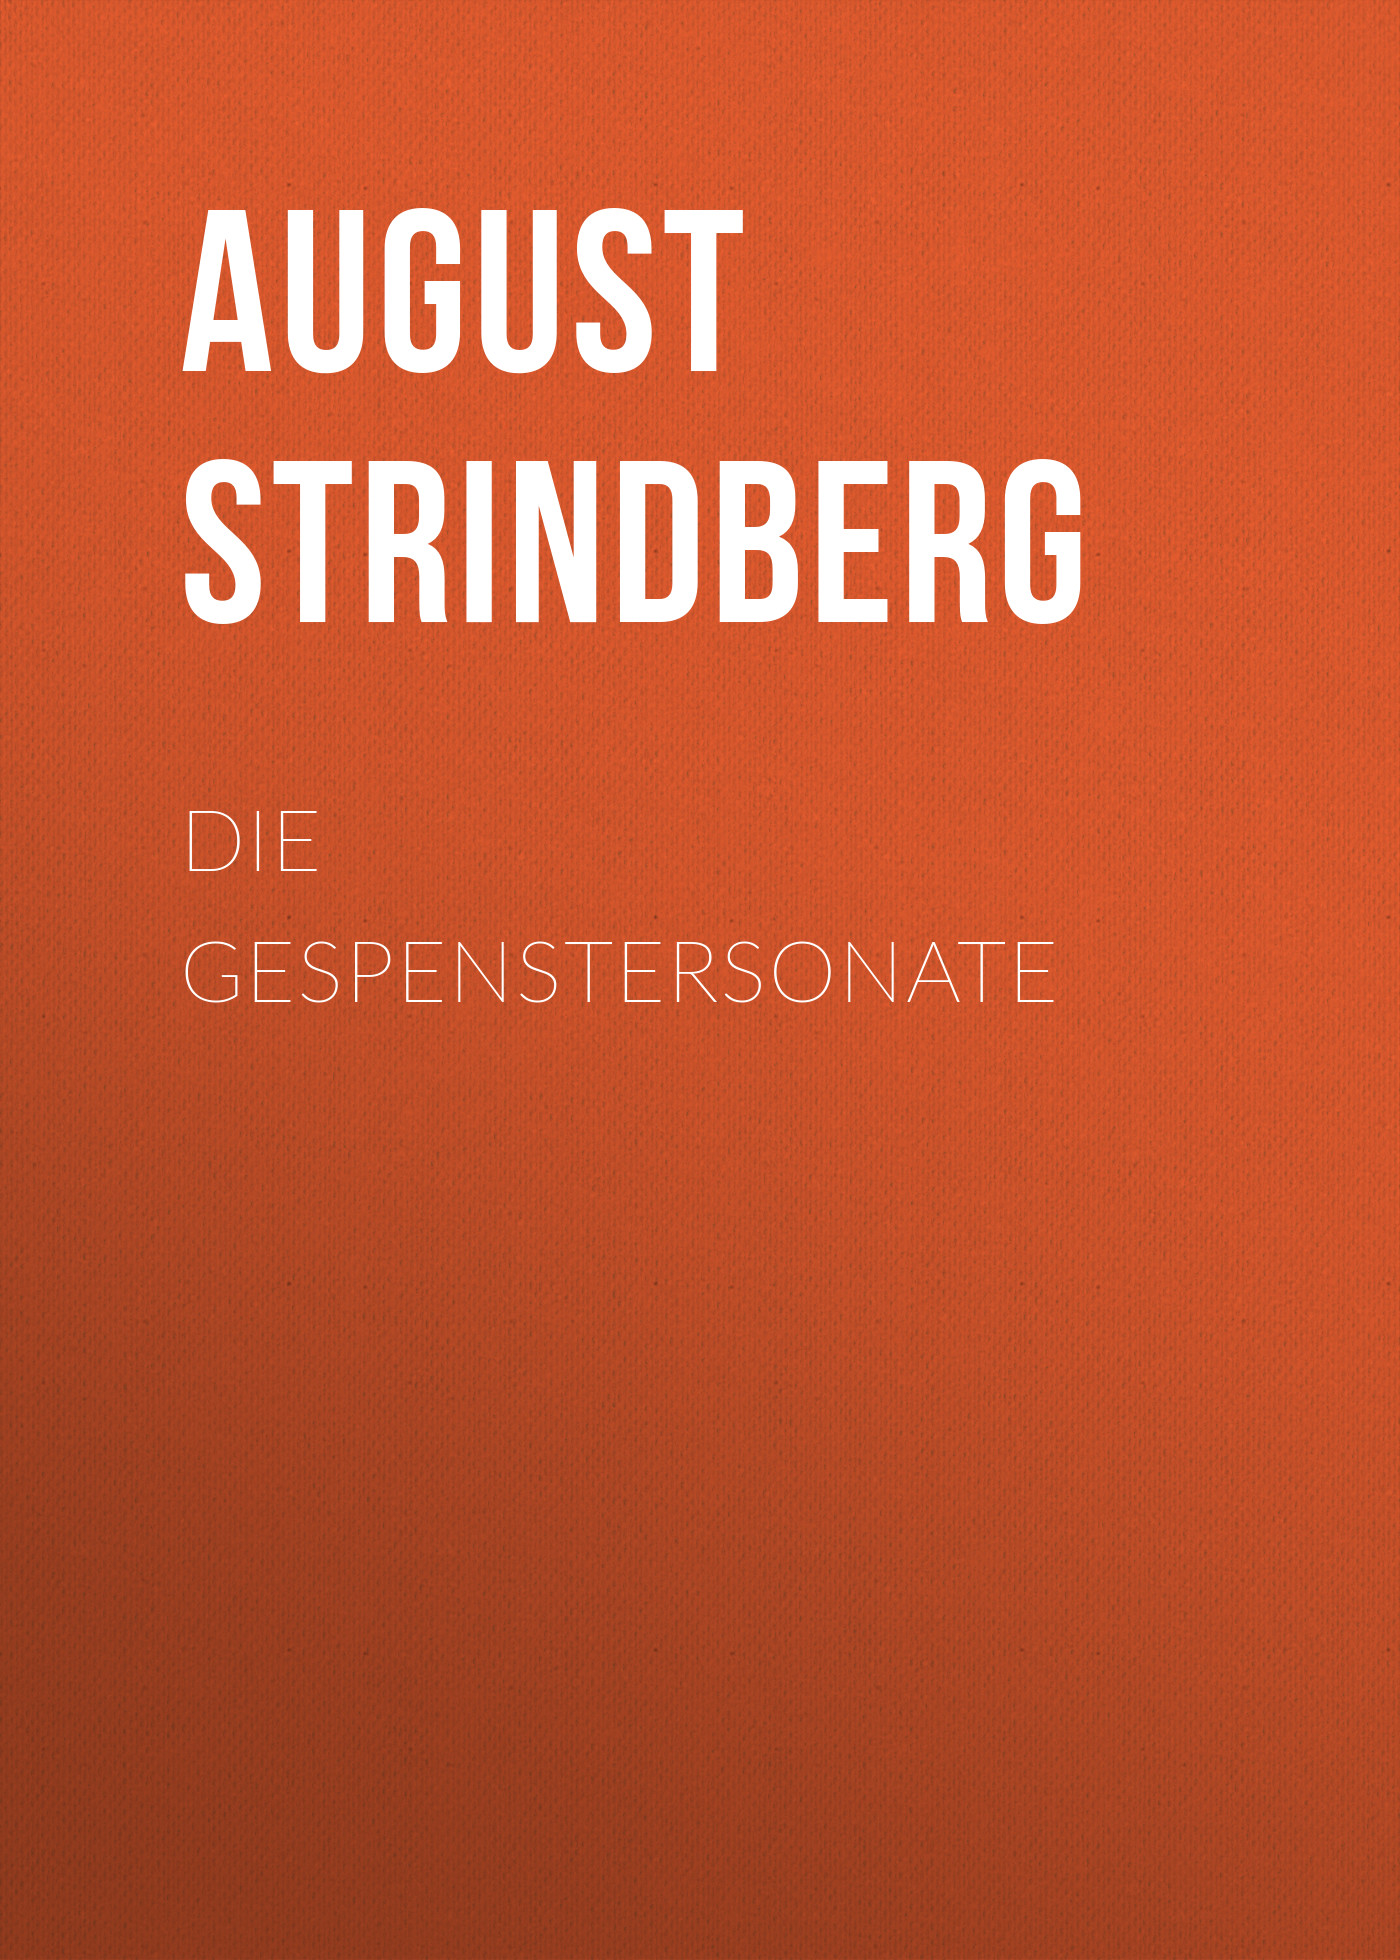 Книга Die Gespenstersonate из серии , созданная August Strindberg, может относится к жанру Зарубежная классика. Стоимость электронной книги Die Gespenstersonate с идентификатором 48633028 составляет 0 руб.